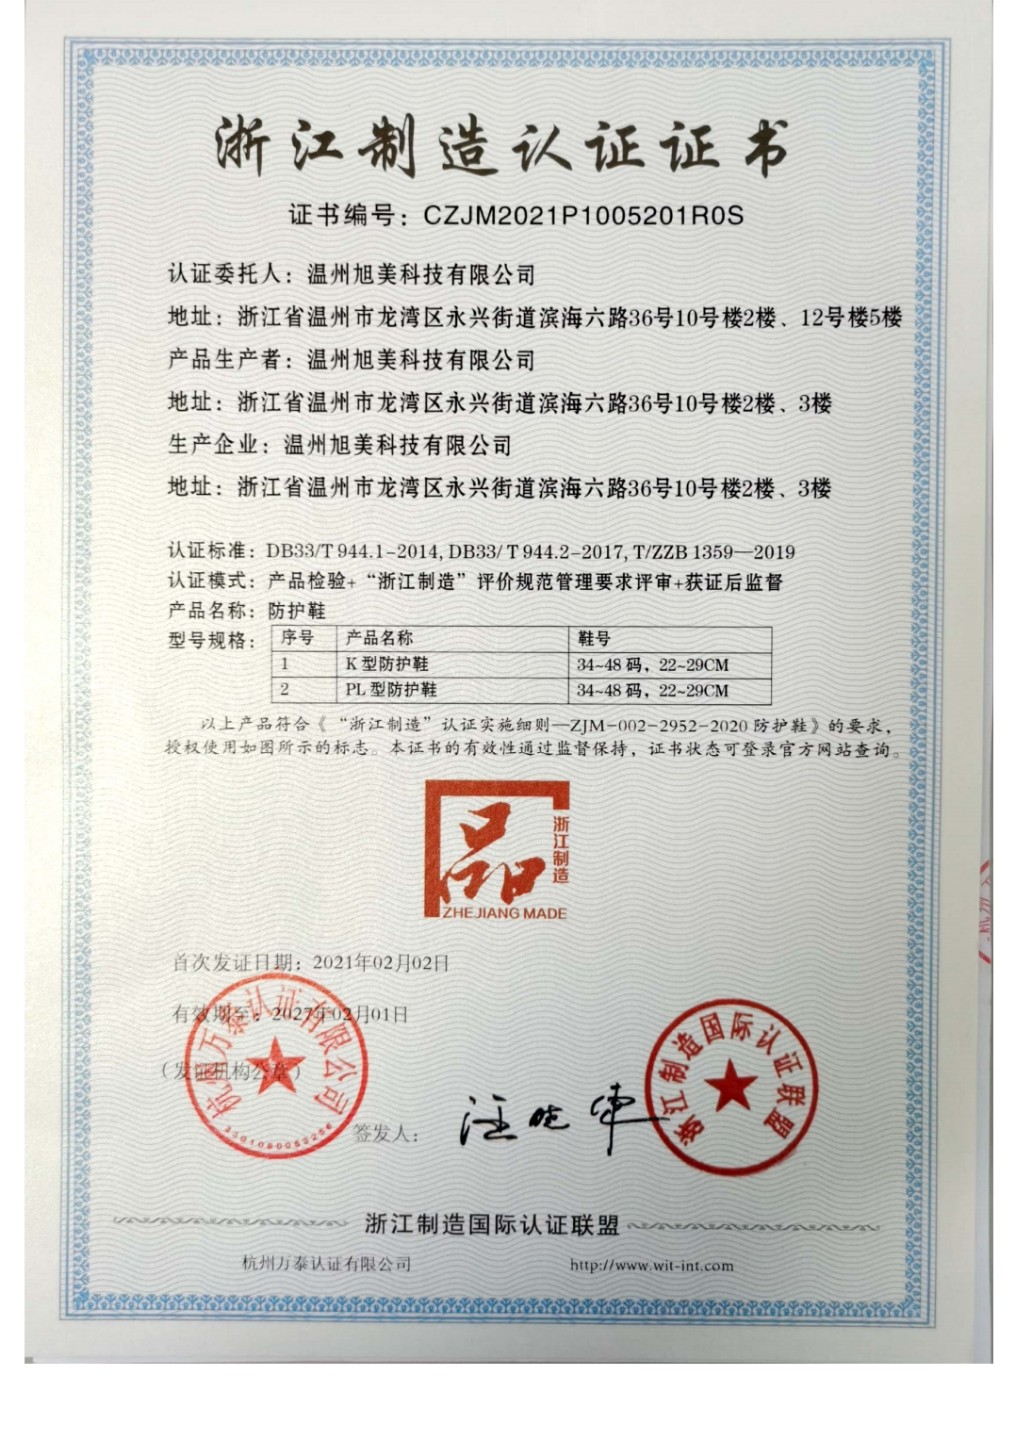 温州旭美产品获颁“品”字标证书  打造浙江制造金名片